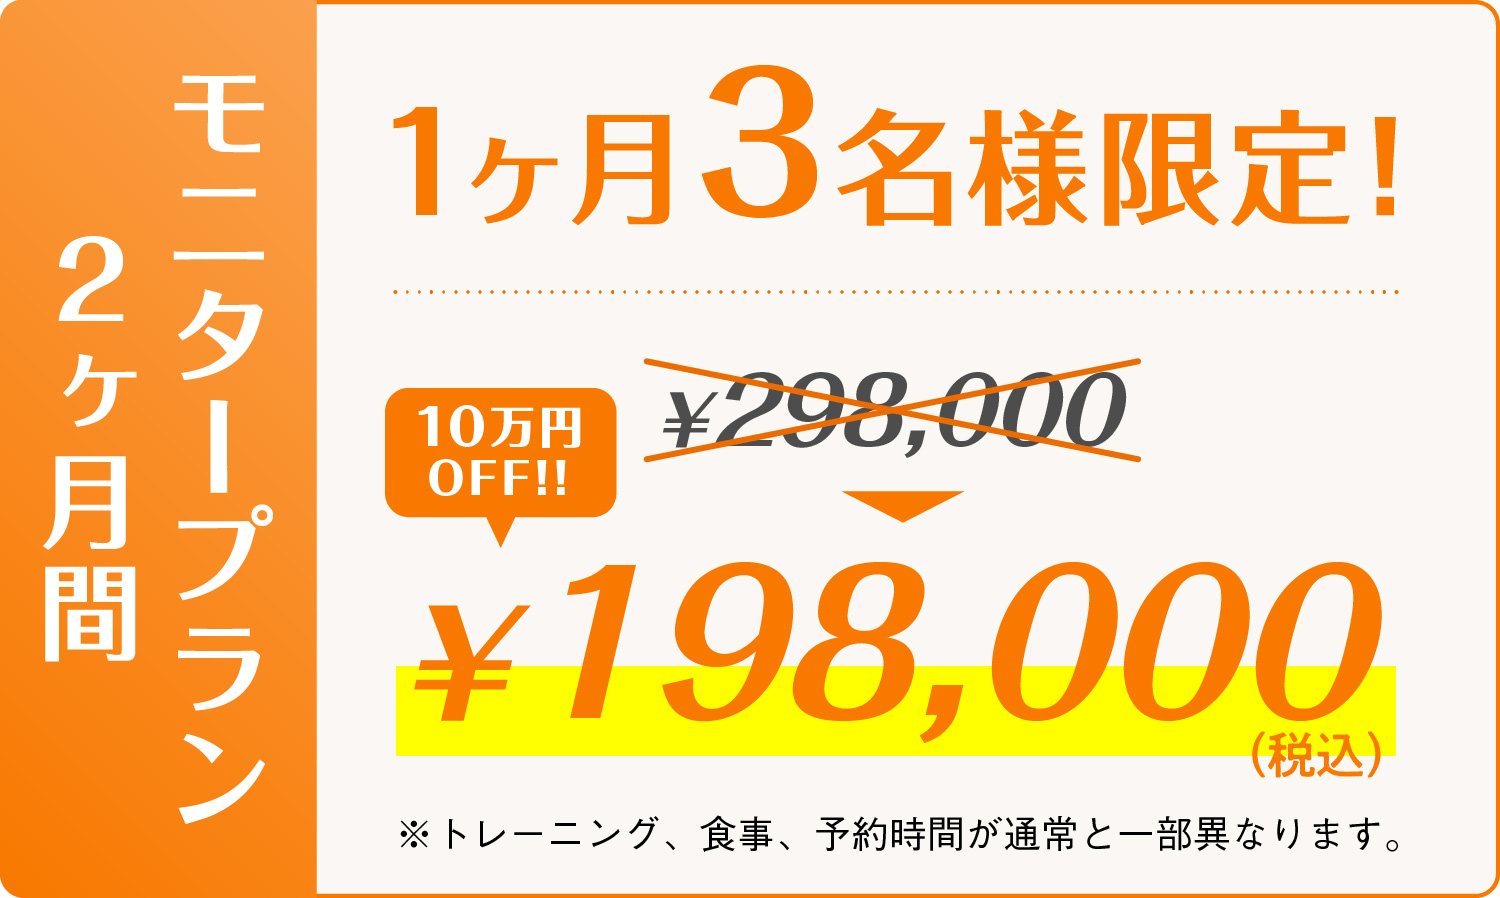 モニタープラン2ヶ月間 1ヶ月3名様限定! 198,000円